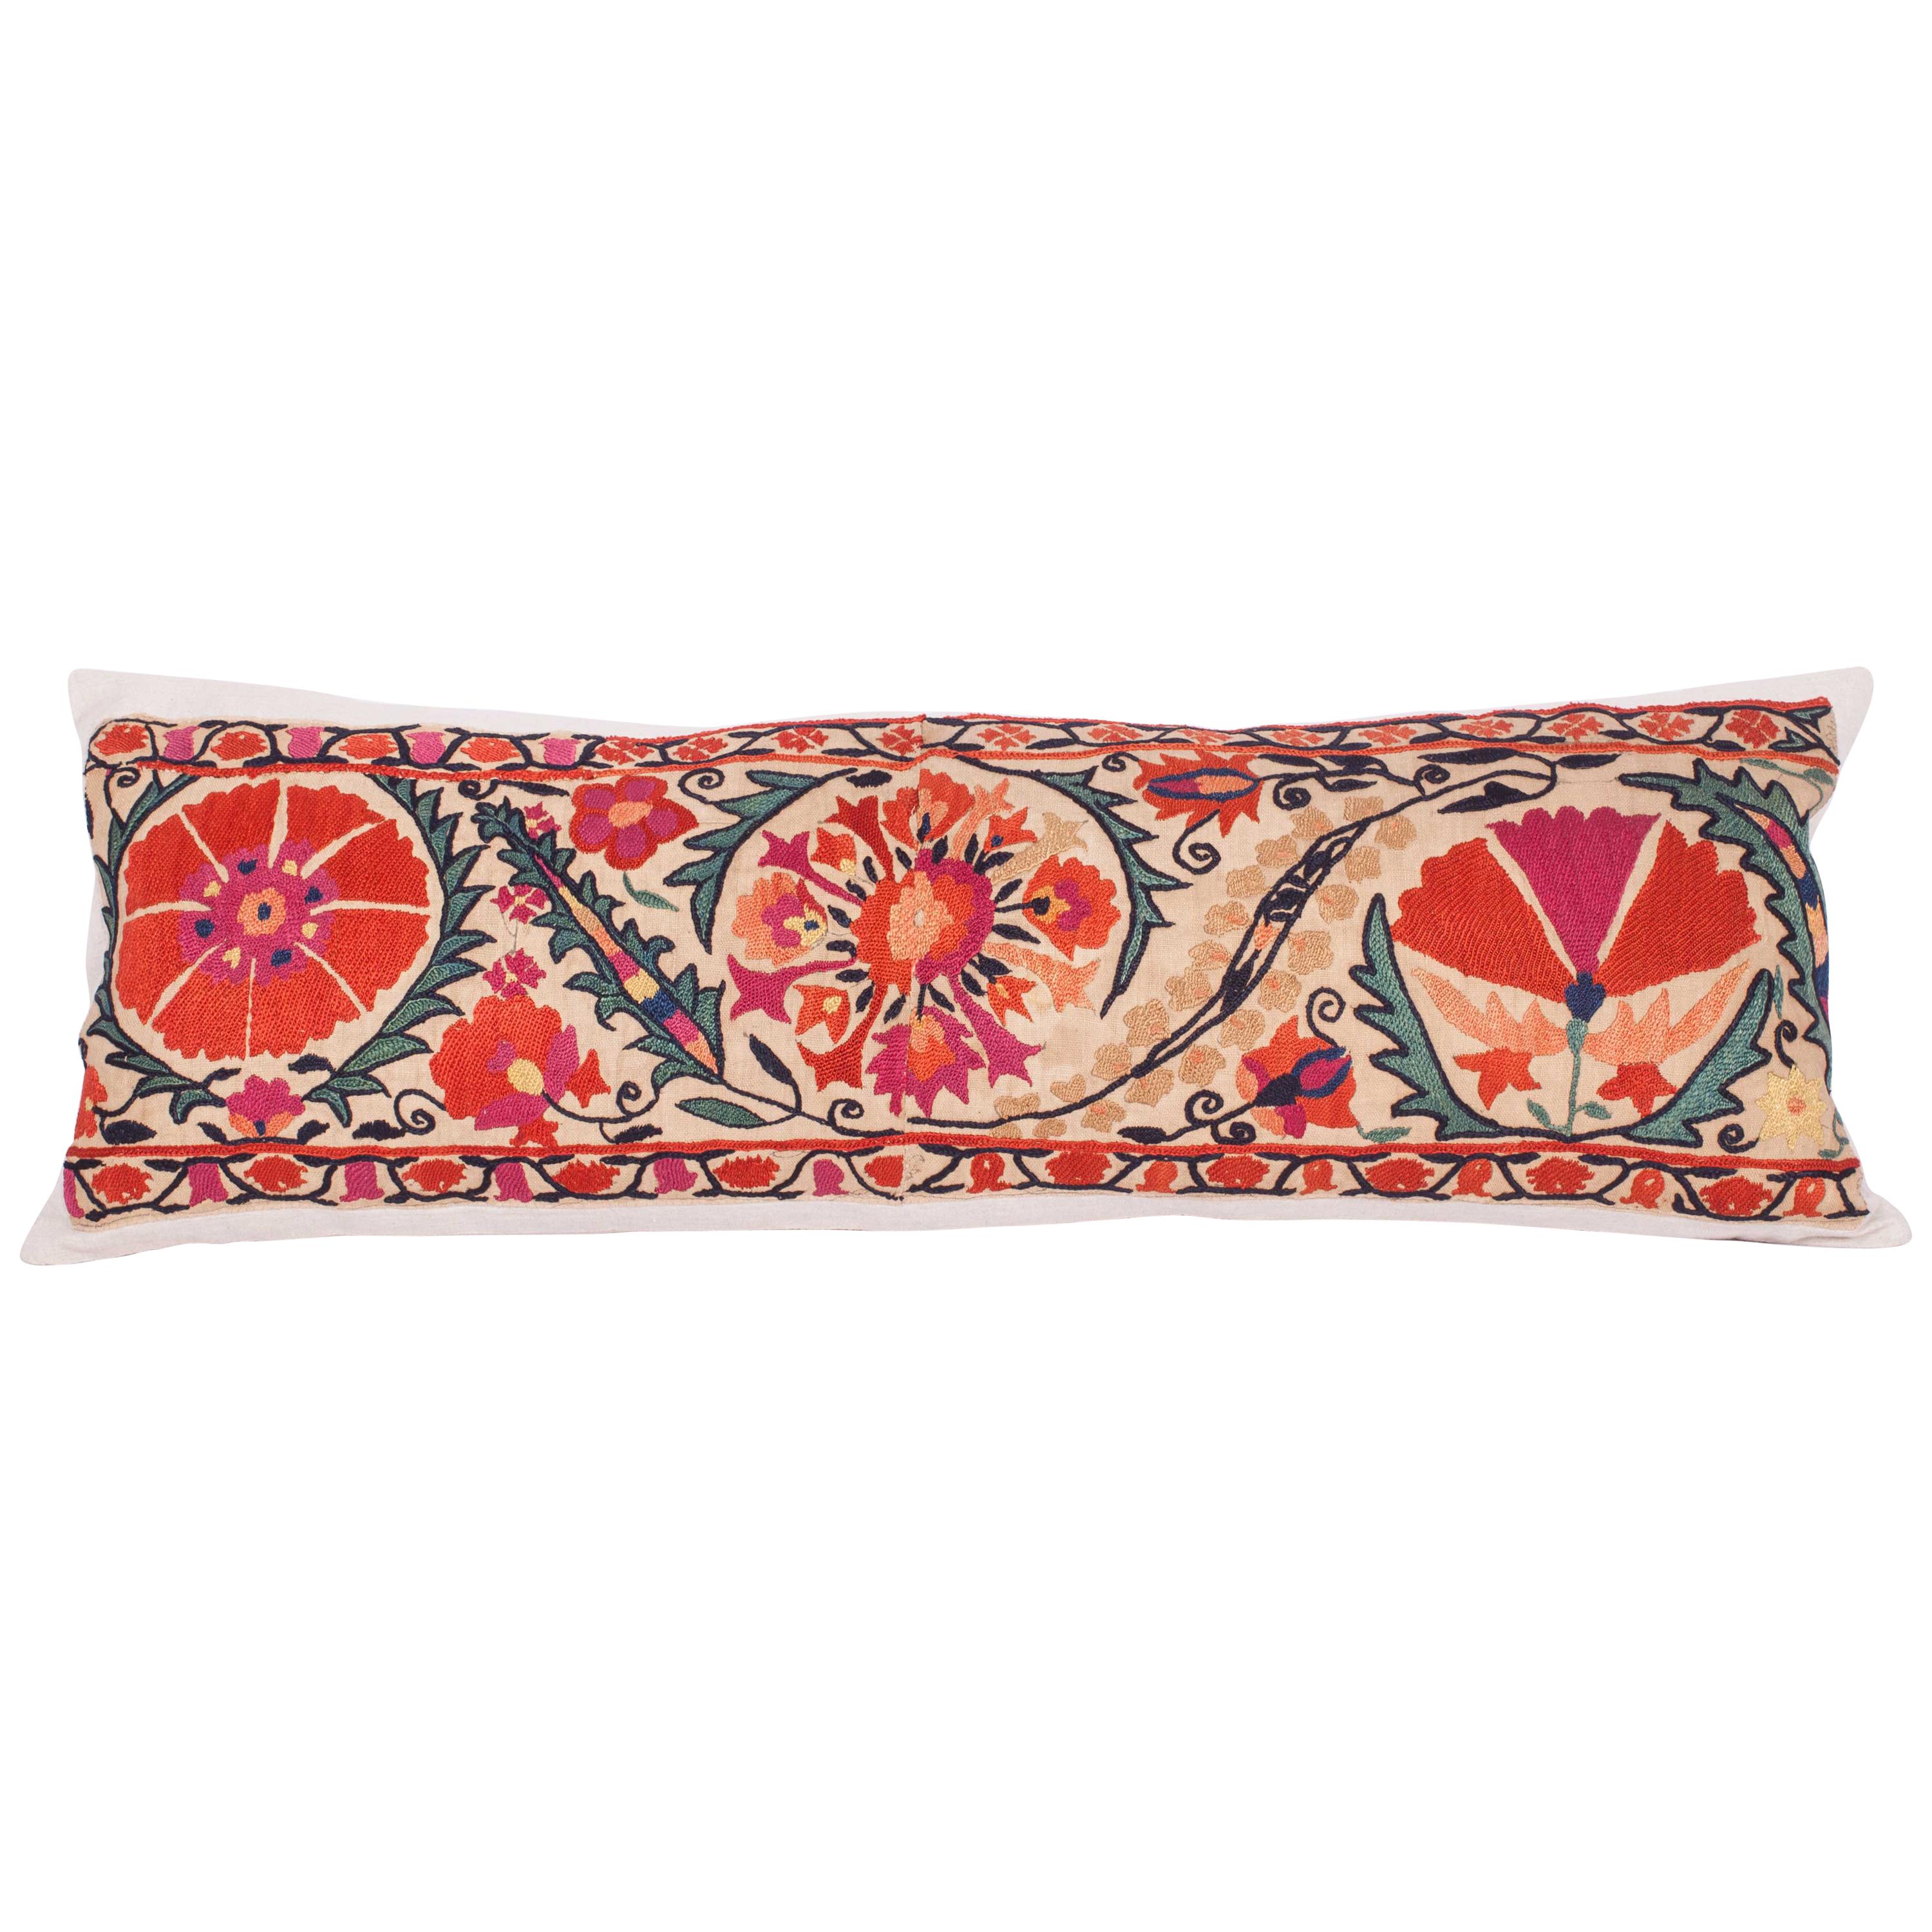 Antique Suzani Pillow Fashioned from a 19th Century Nurata Suzani